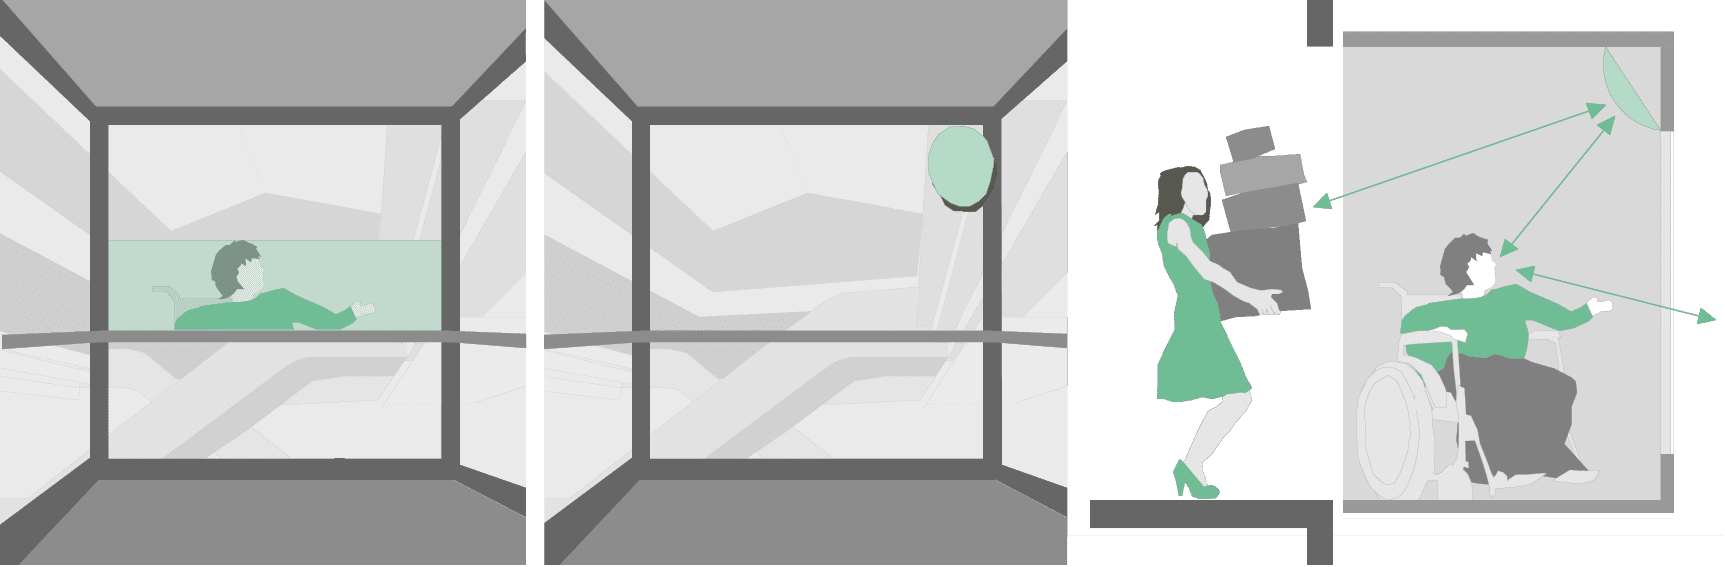 Aufzug: Spiegel in verglaster Aufzugskabine